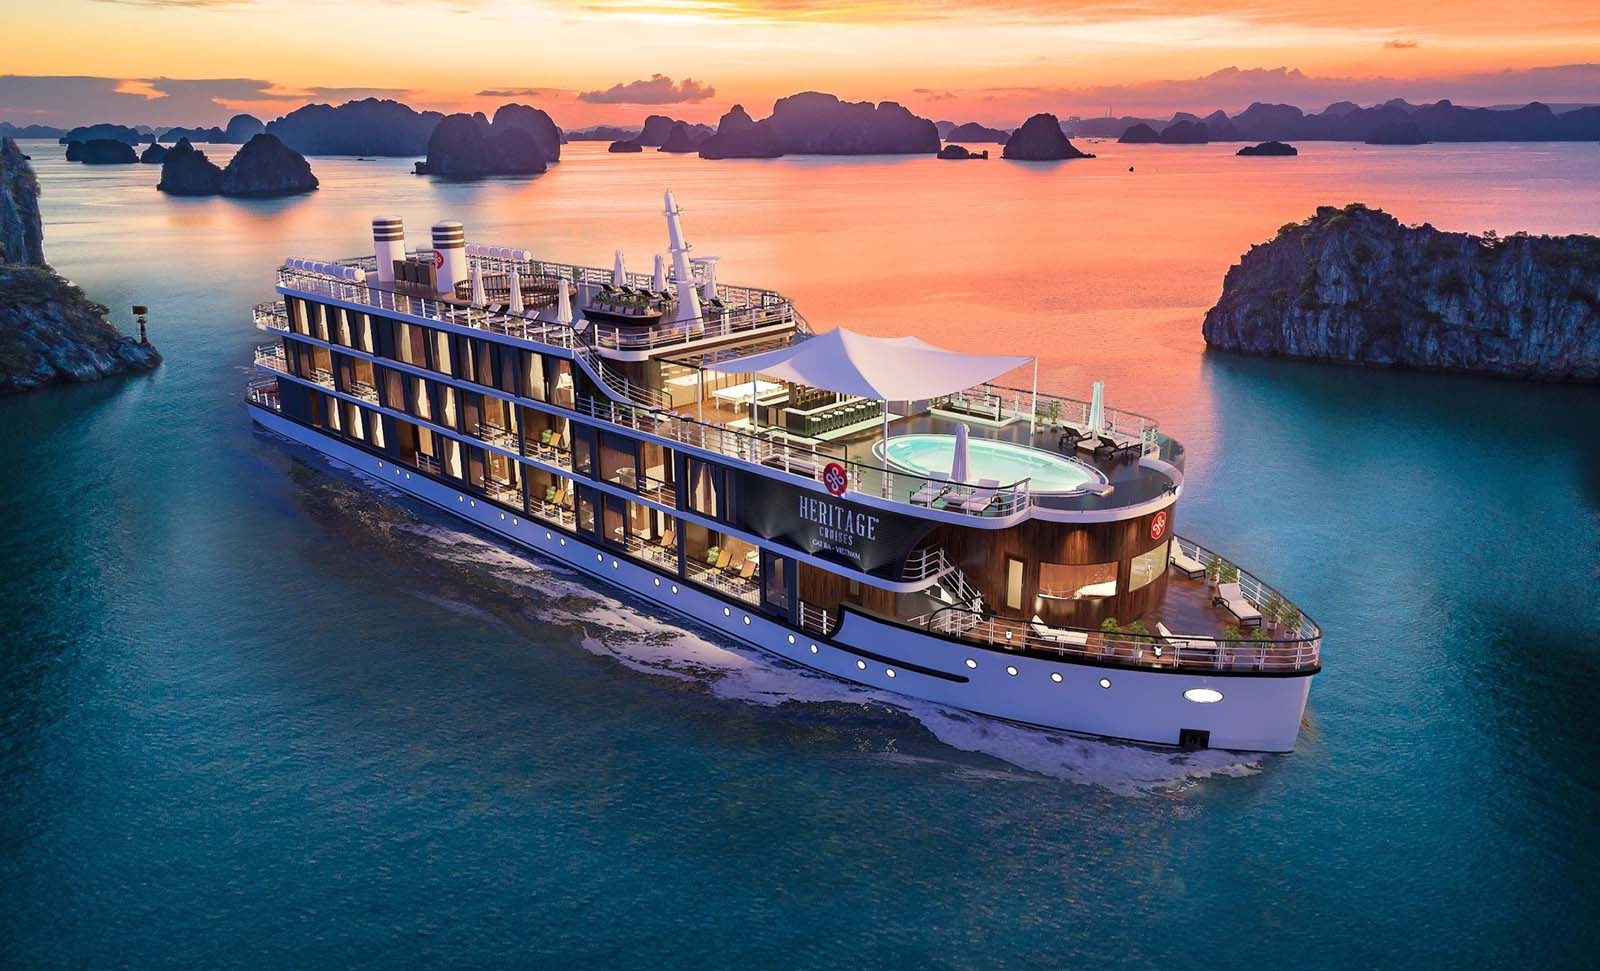 Heritage Cruise - Halong Bay Cruise